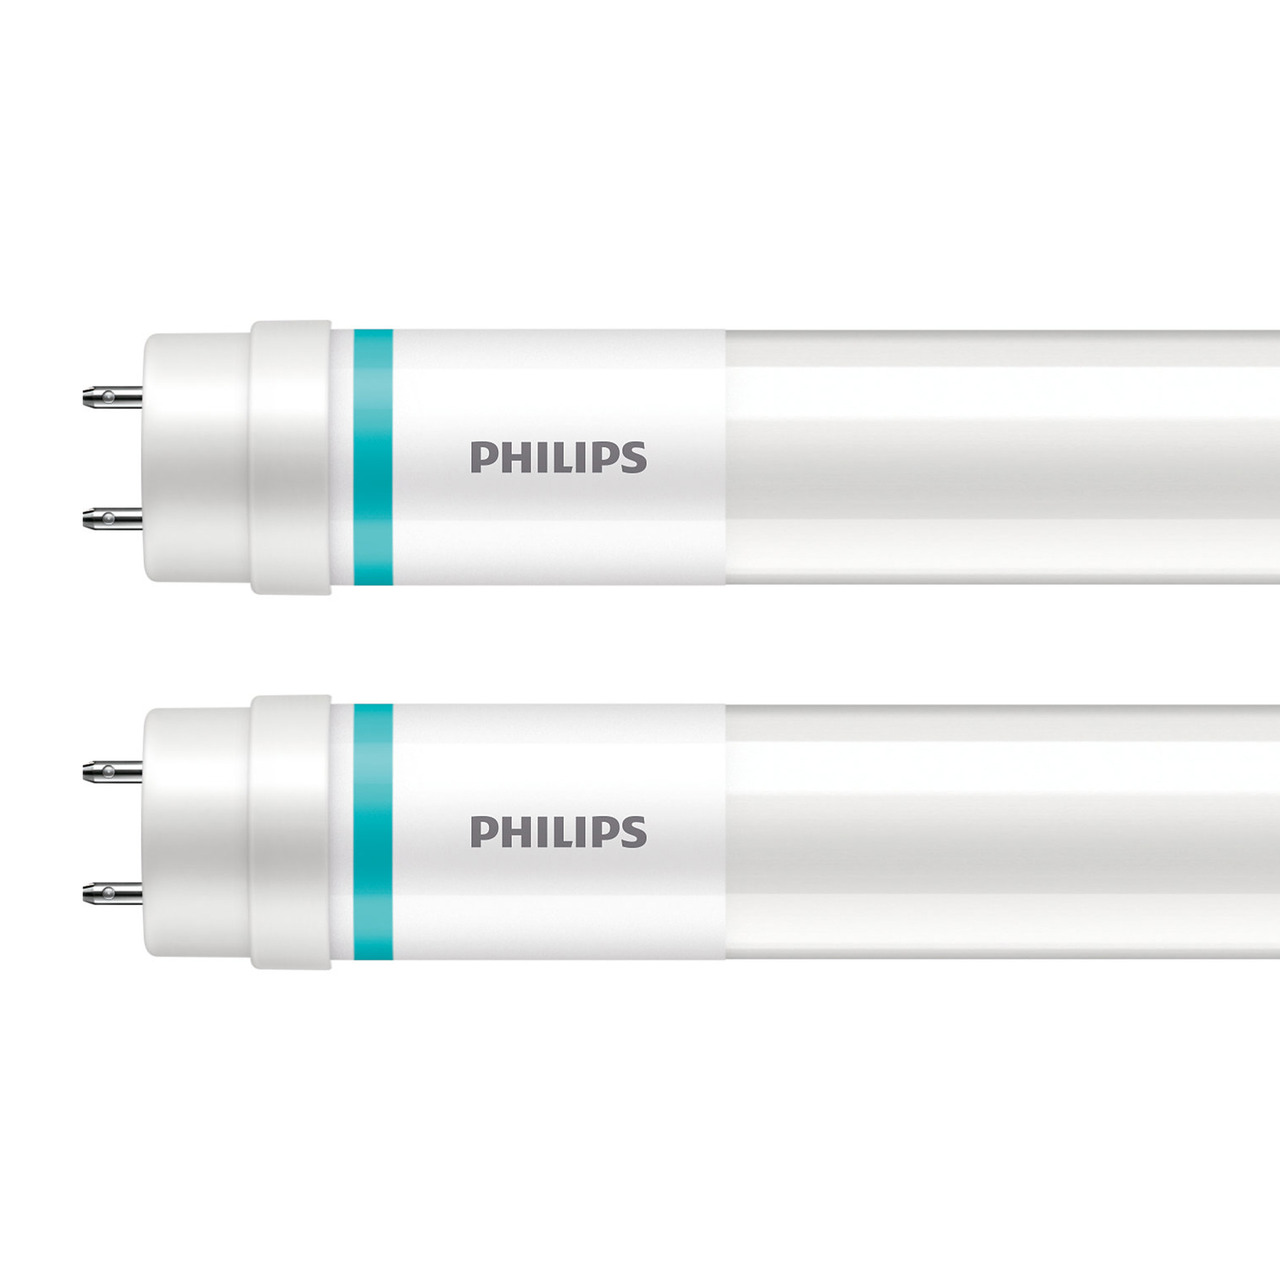 Philips 2er-Set 15-5-W-T8-LED-Rhrenlampe LEDtube UO- 2500 lm- kaltweiss- KVG-VVG- 120 cm unter Beleuchtung